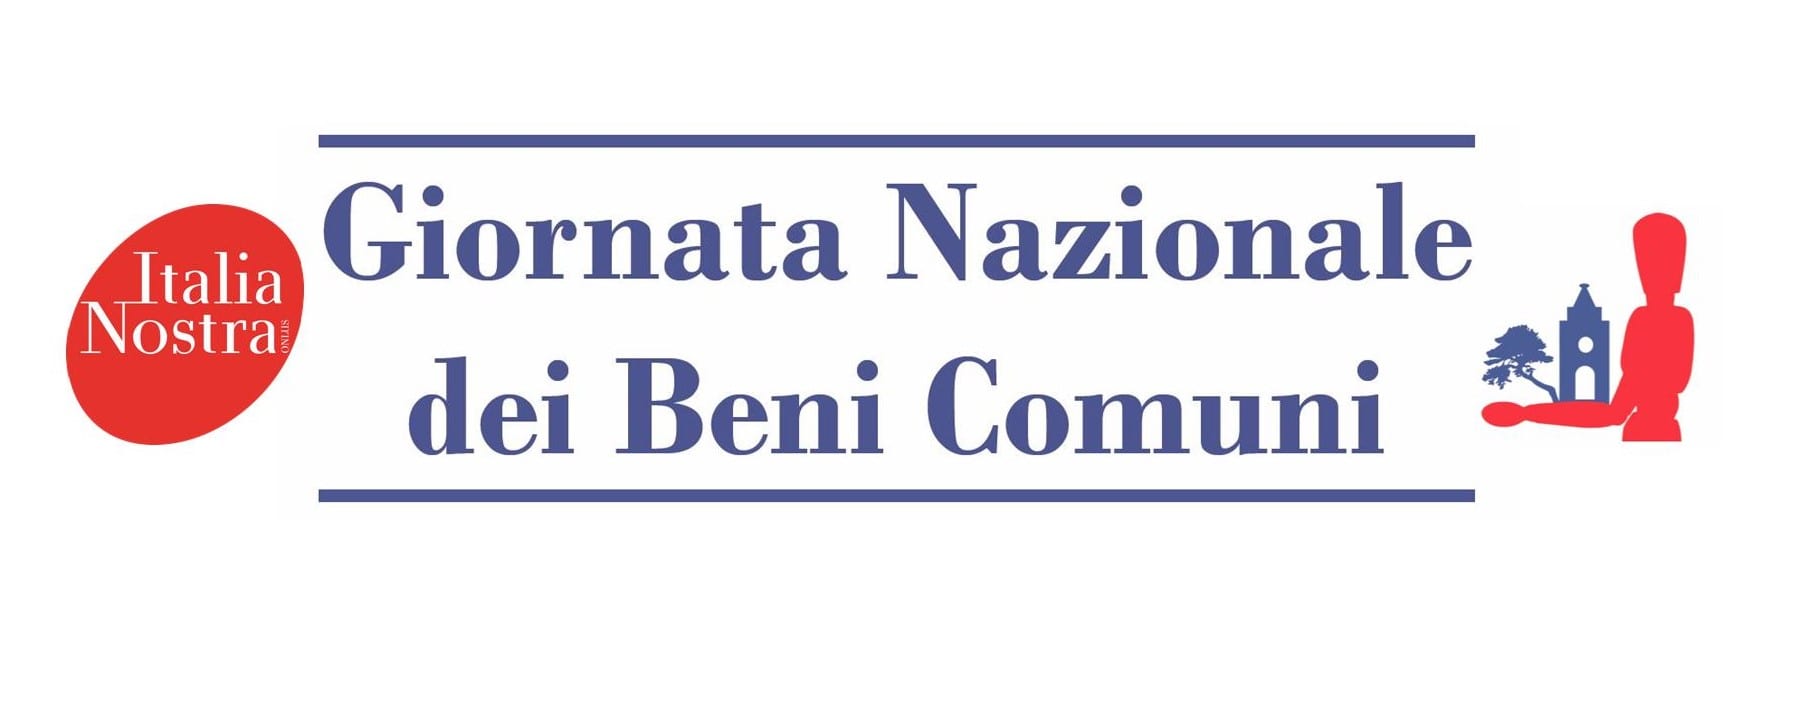 1ª Giornata Nazionale dei Beni Comuni di Italia Nostra